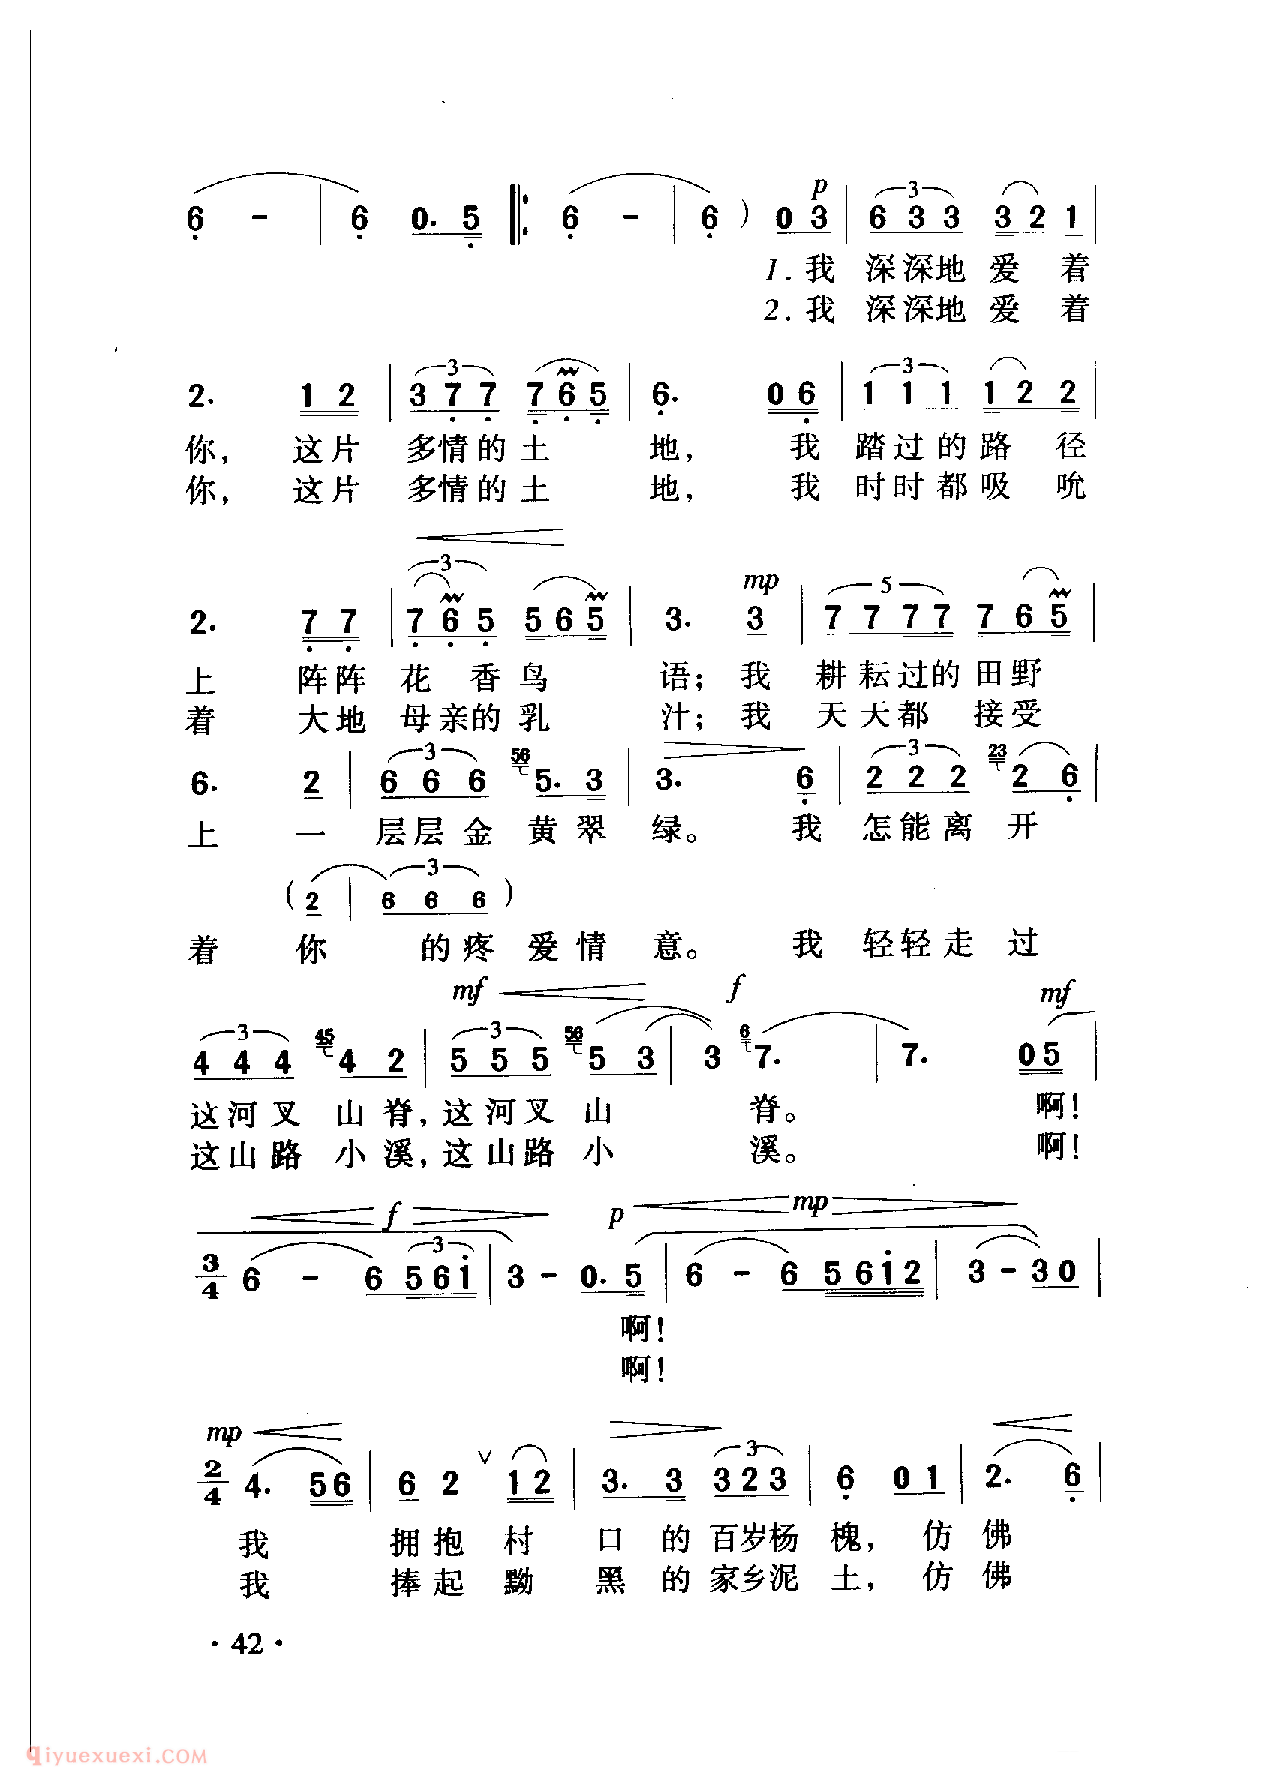 中国名歌[多情的土地]乐谱